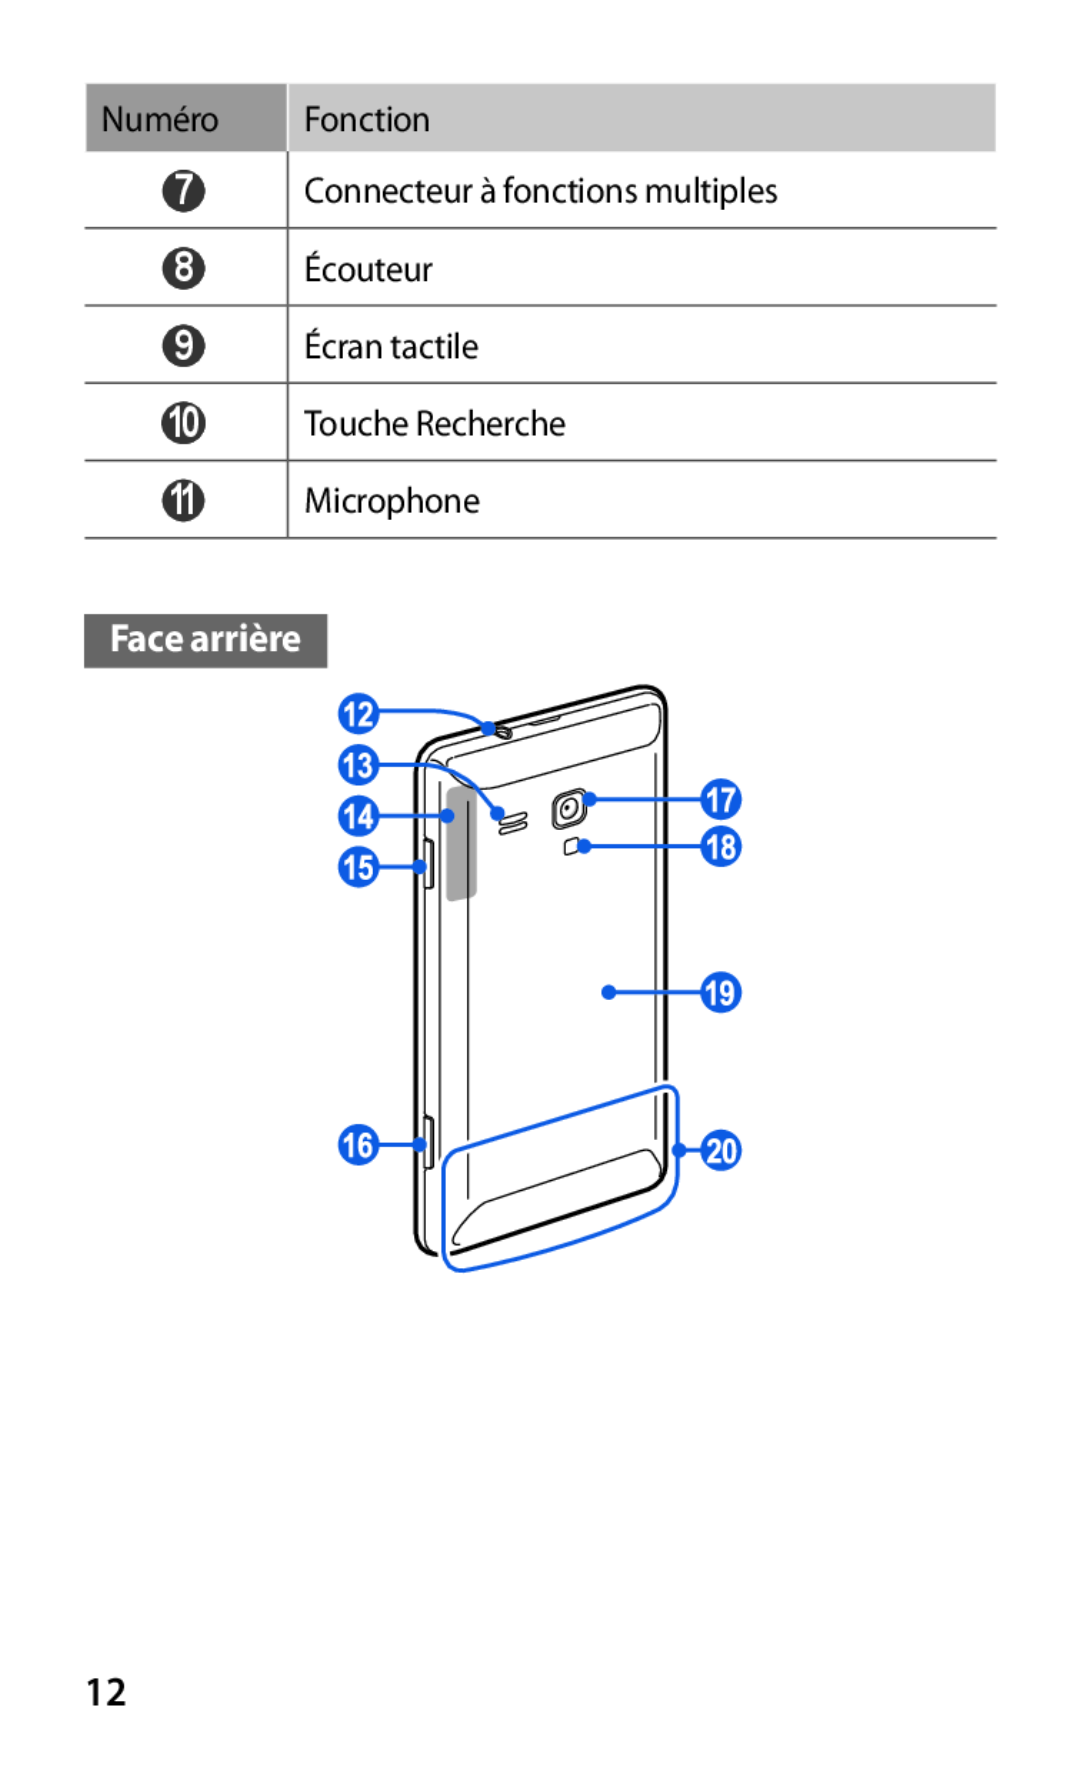 Samsung GT-S7530EAAXEF manual Face arrière, Numéro Fonction 7 Connecteur à fonctions multiples 8 Écouteur, 9 Écran tactile 